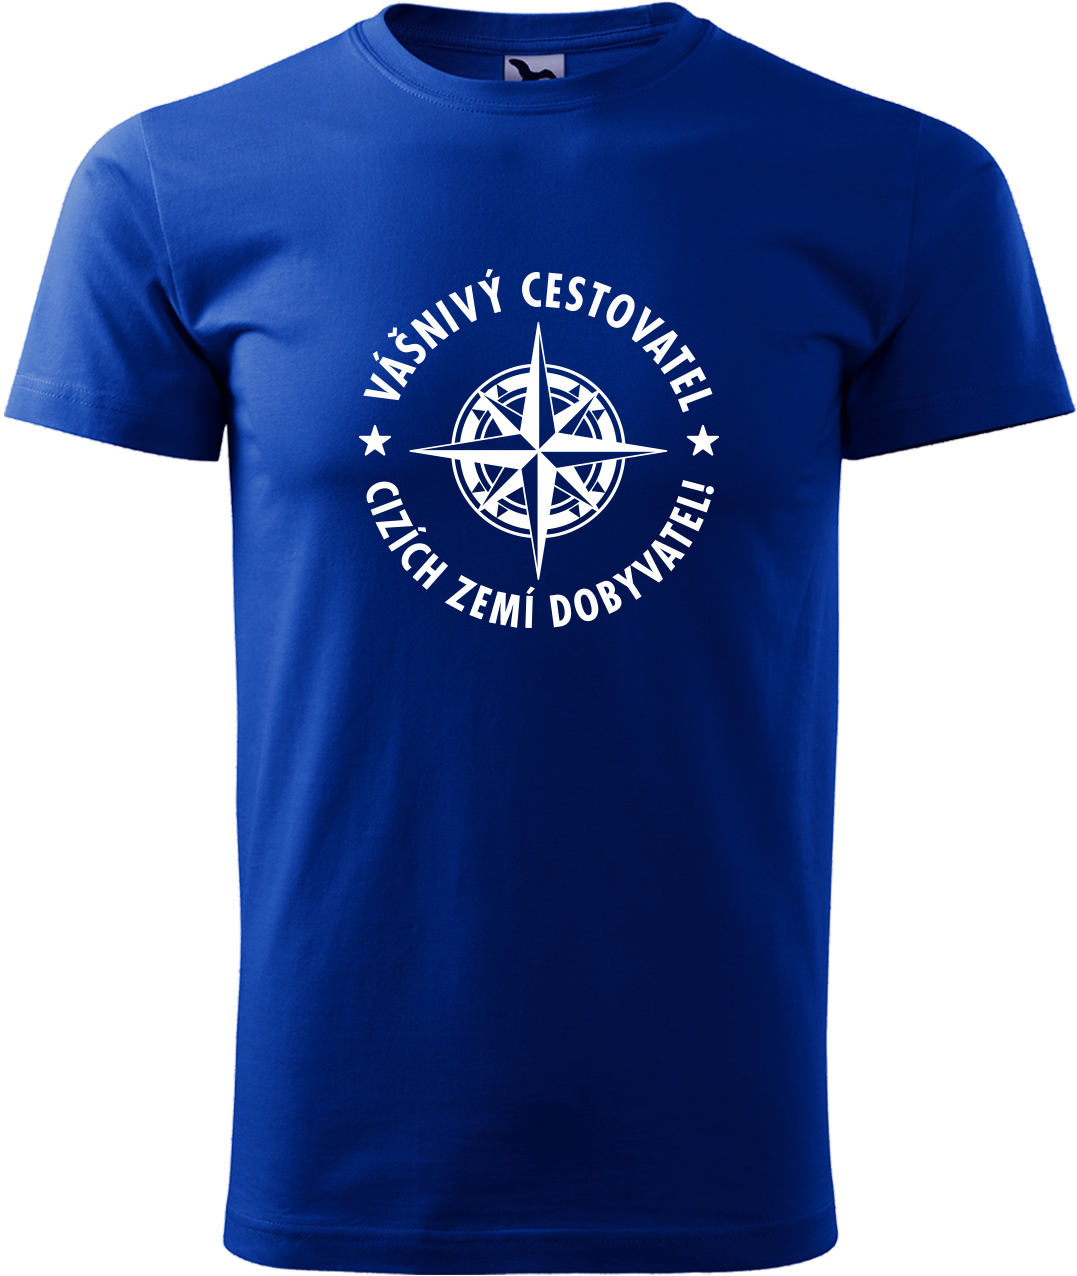 Pánské cestovatelské tričko - Vášnivý cestovatel, cizích zemí dobyvatel Velikost: XL, Barva: Královská modrá (05), Střih: pánský